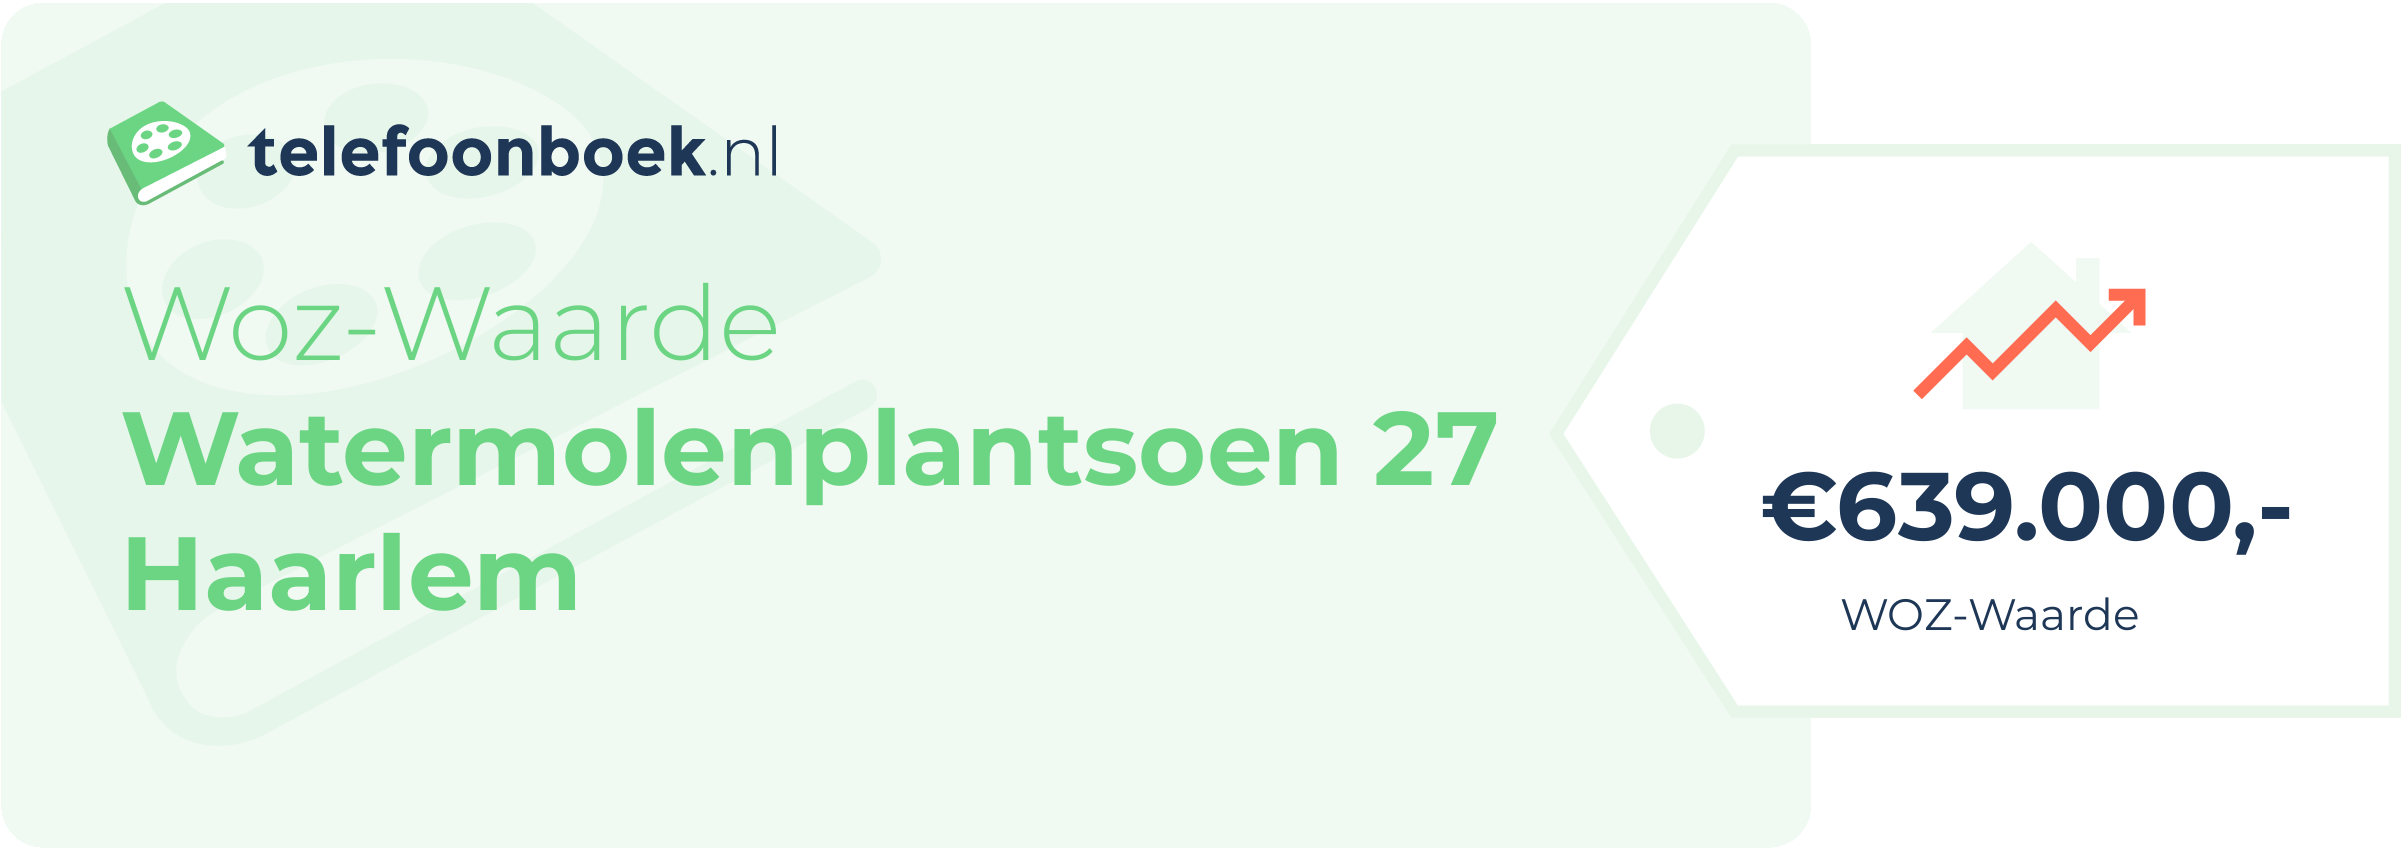 WOZ-waarde Watermolenplantsoen 27 Haarlem